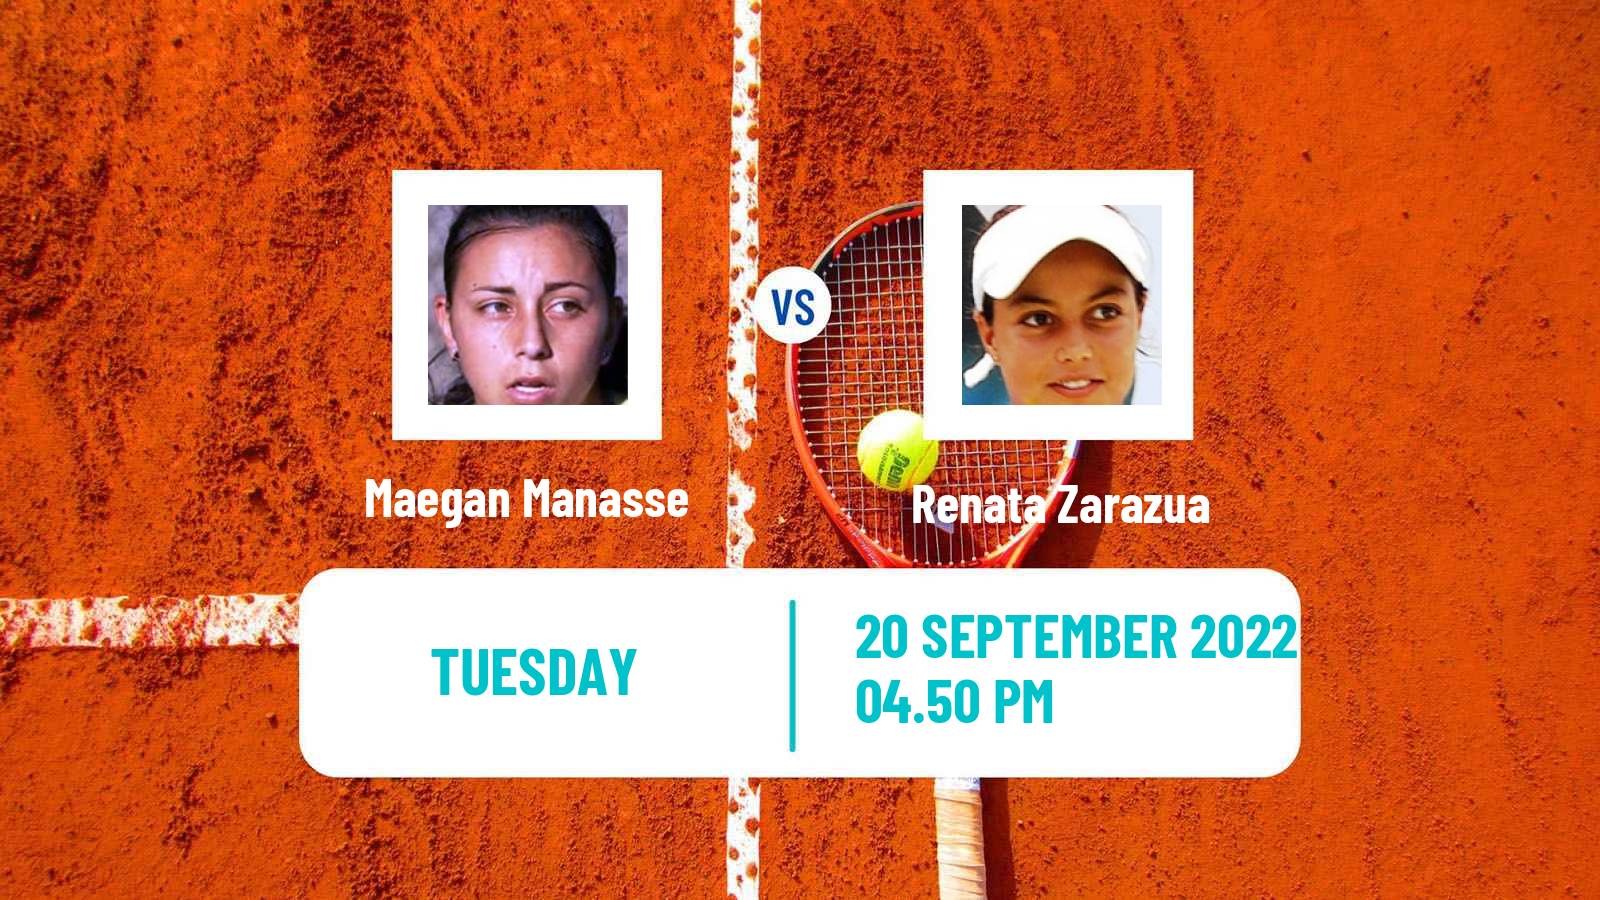 Tennis ITF Tournaments Maegan Manasse - Renata Zarazua